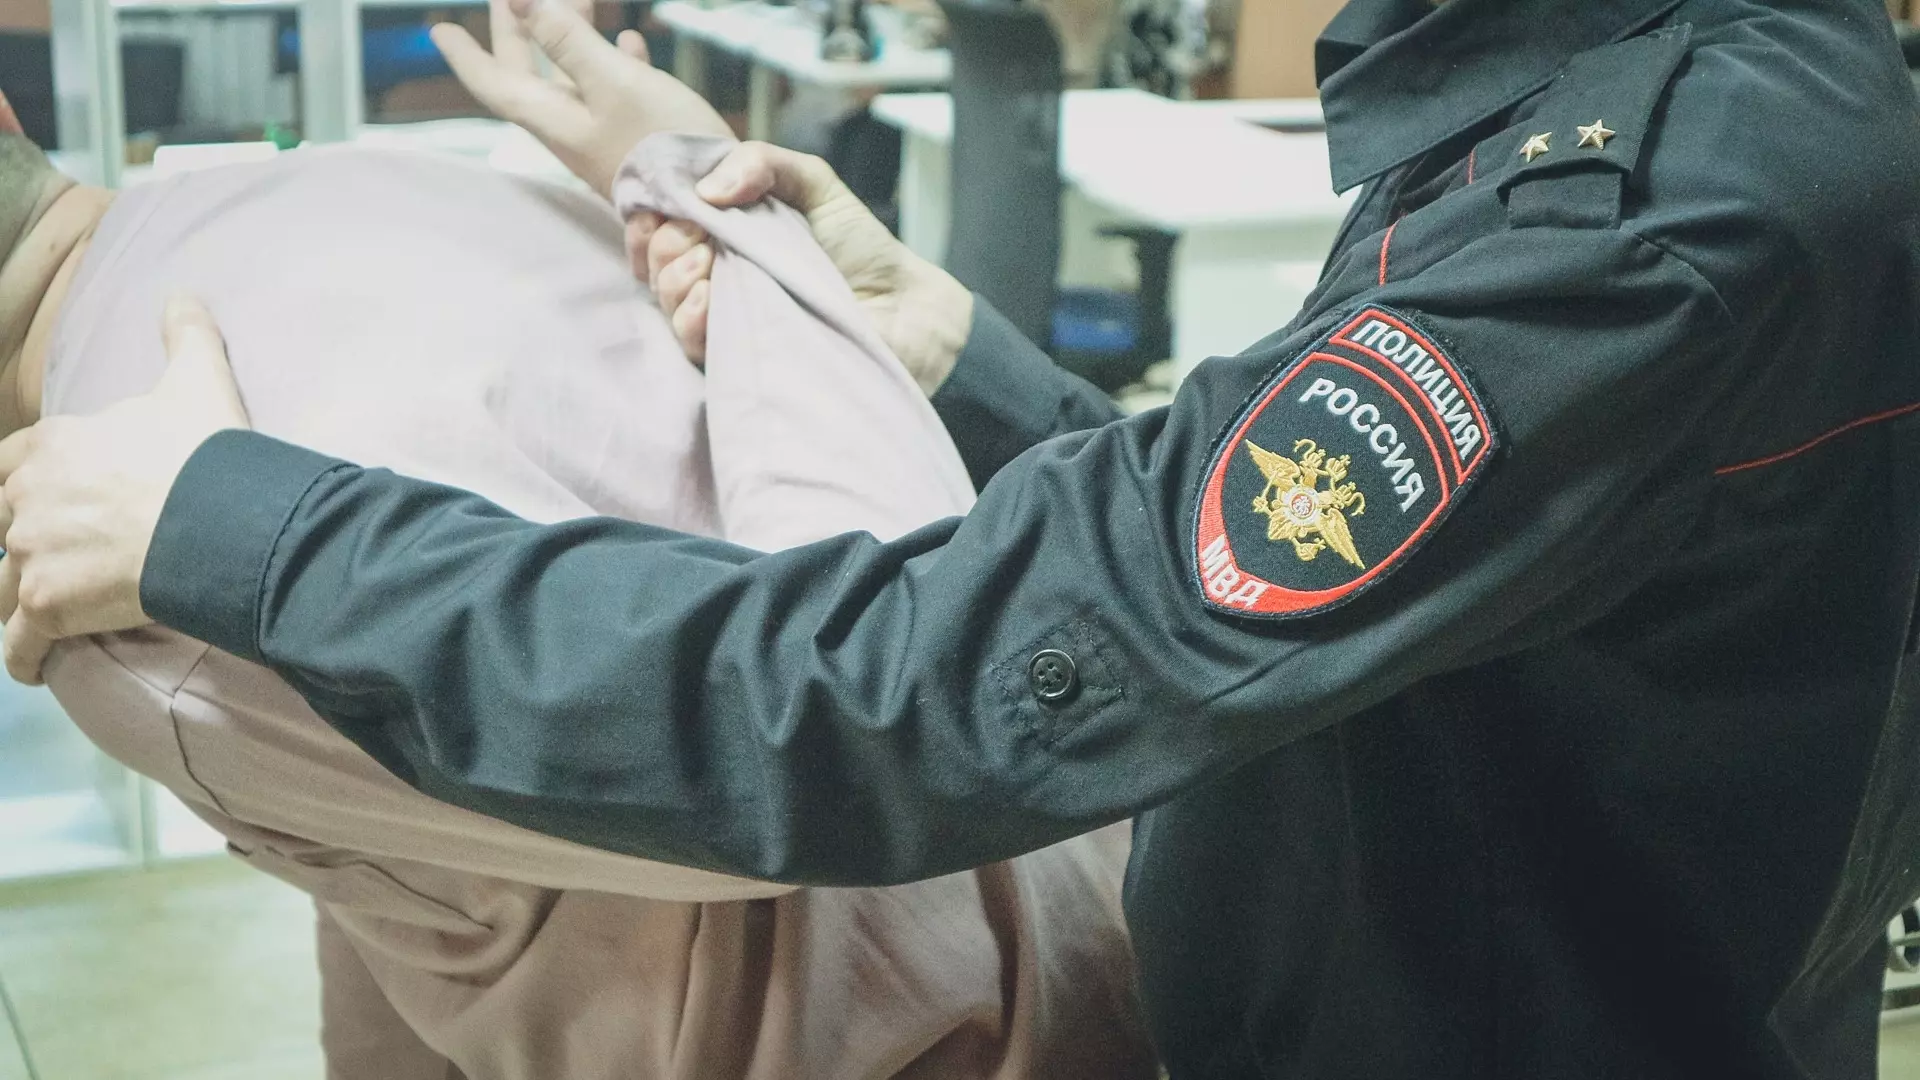 Группу поджигателей выявили в Ростовской области силовики